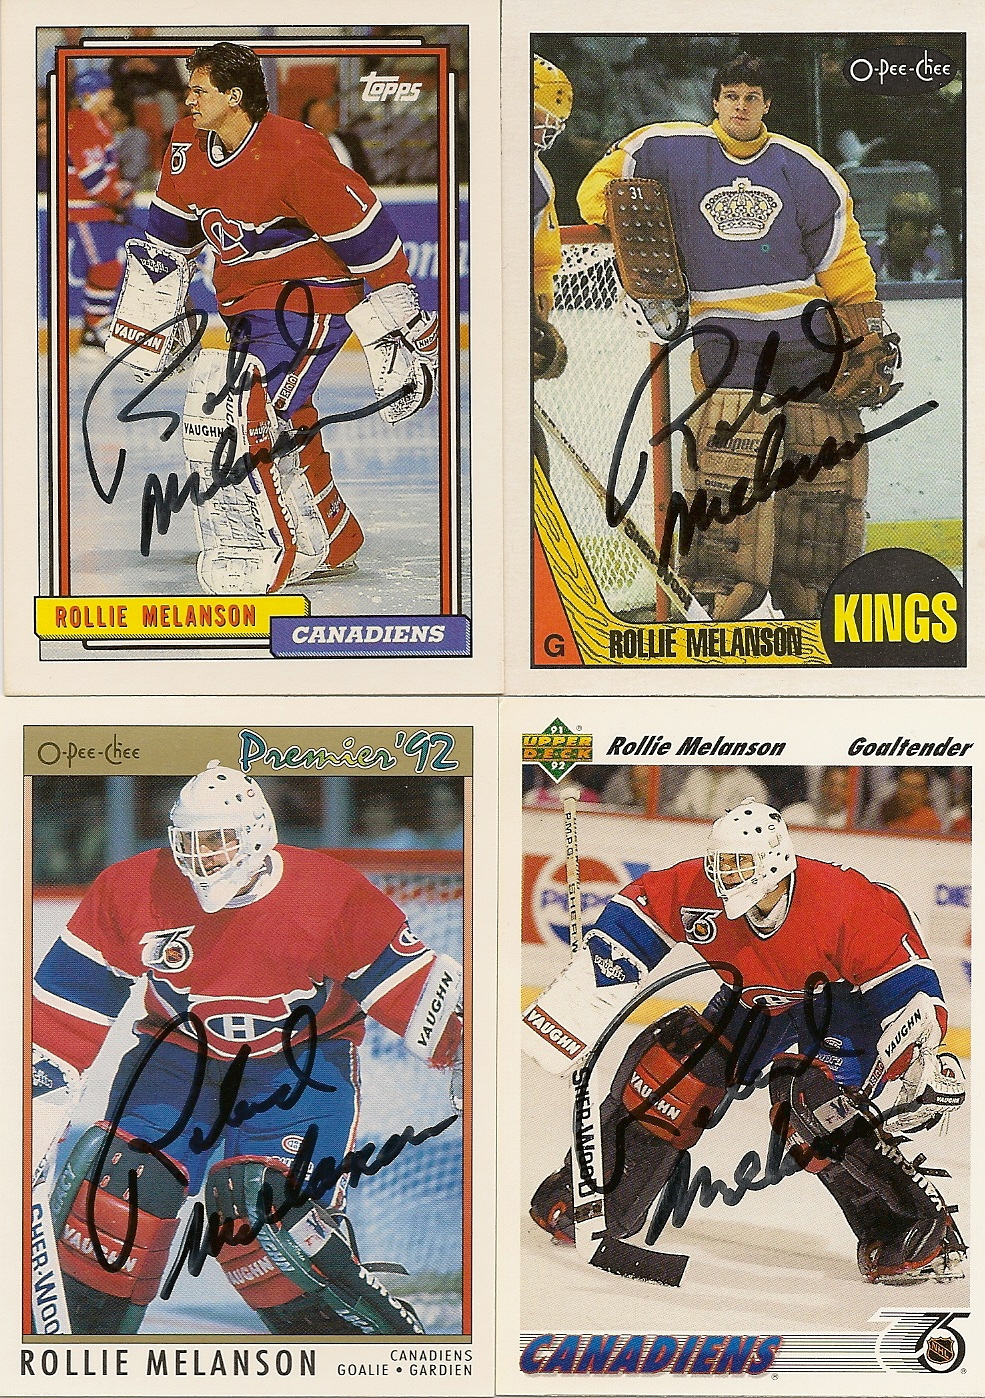 1992-93 Fleer Ultra - NHL All-Star #9 - Ed Belfour